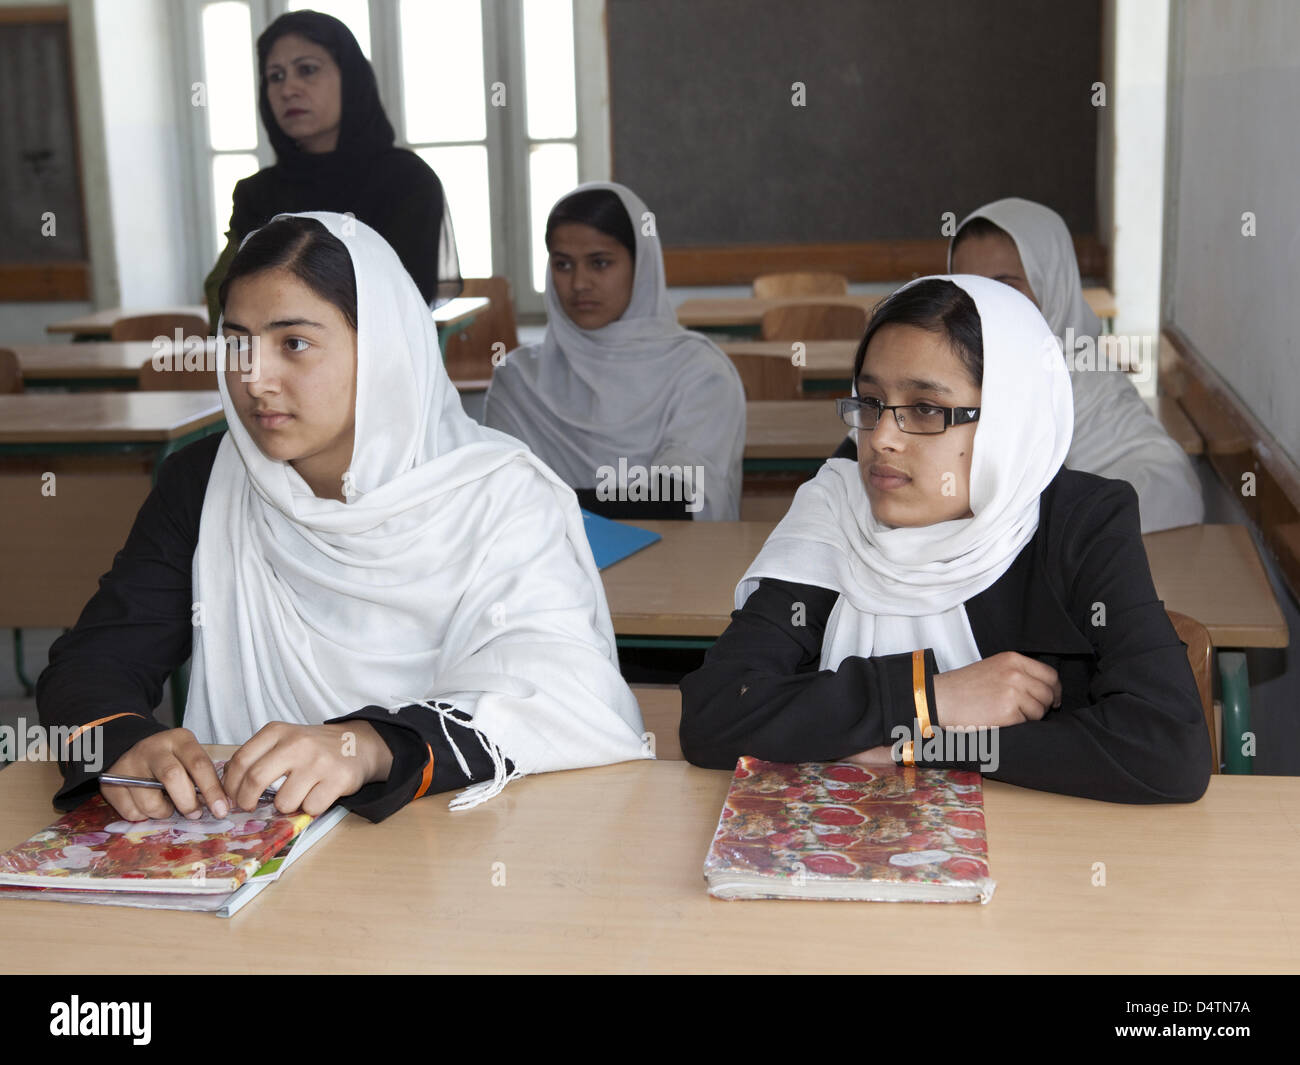 Les filles portant le foulard assister à un cours d'allemand à l'école de filles de Durani dans Kaboul, Afghanistan, le 19 mai 2009. L'Allemagne a contribué à la reconstruction de l'école après la fin de l'emprise des talibans et au moment où elle a été un soutien financier et d'autres enseignants. Photo : Mika Schmidt Banque D'Images